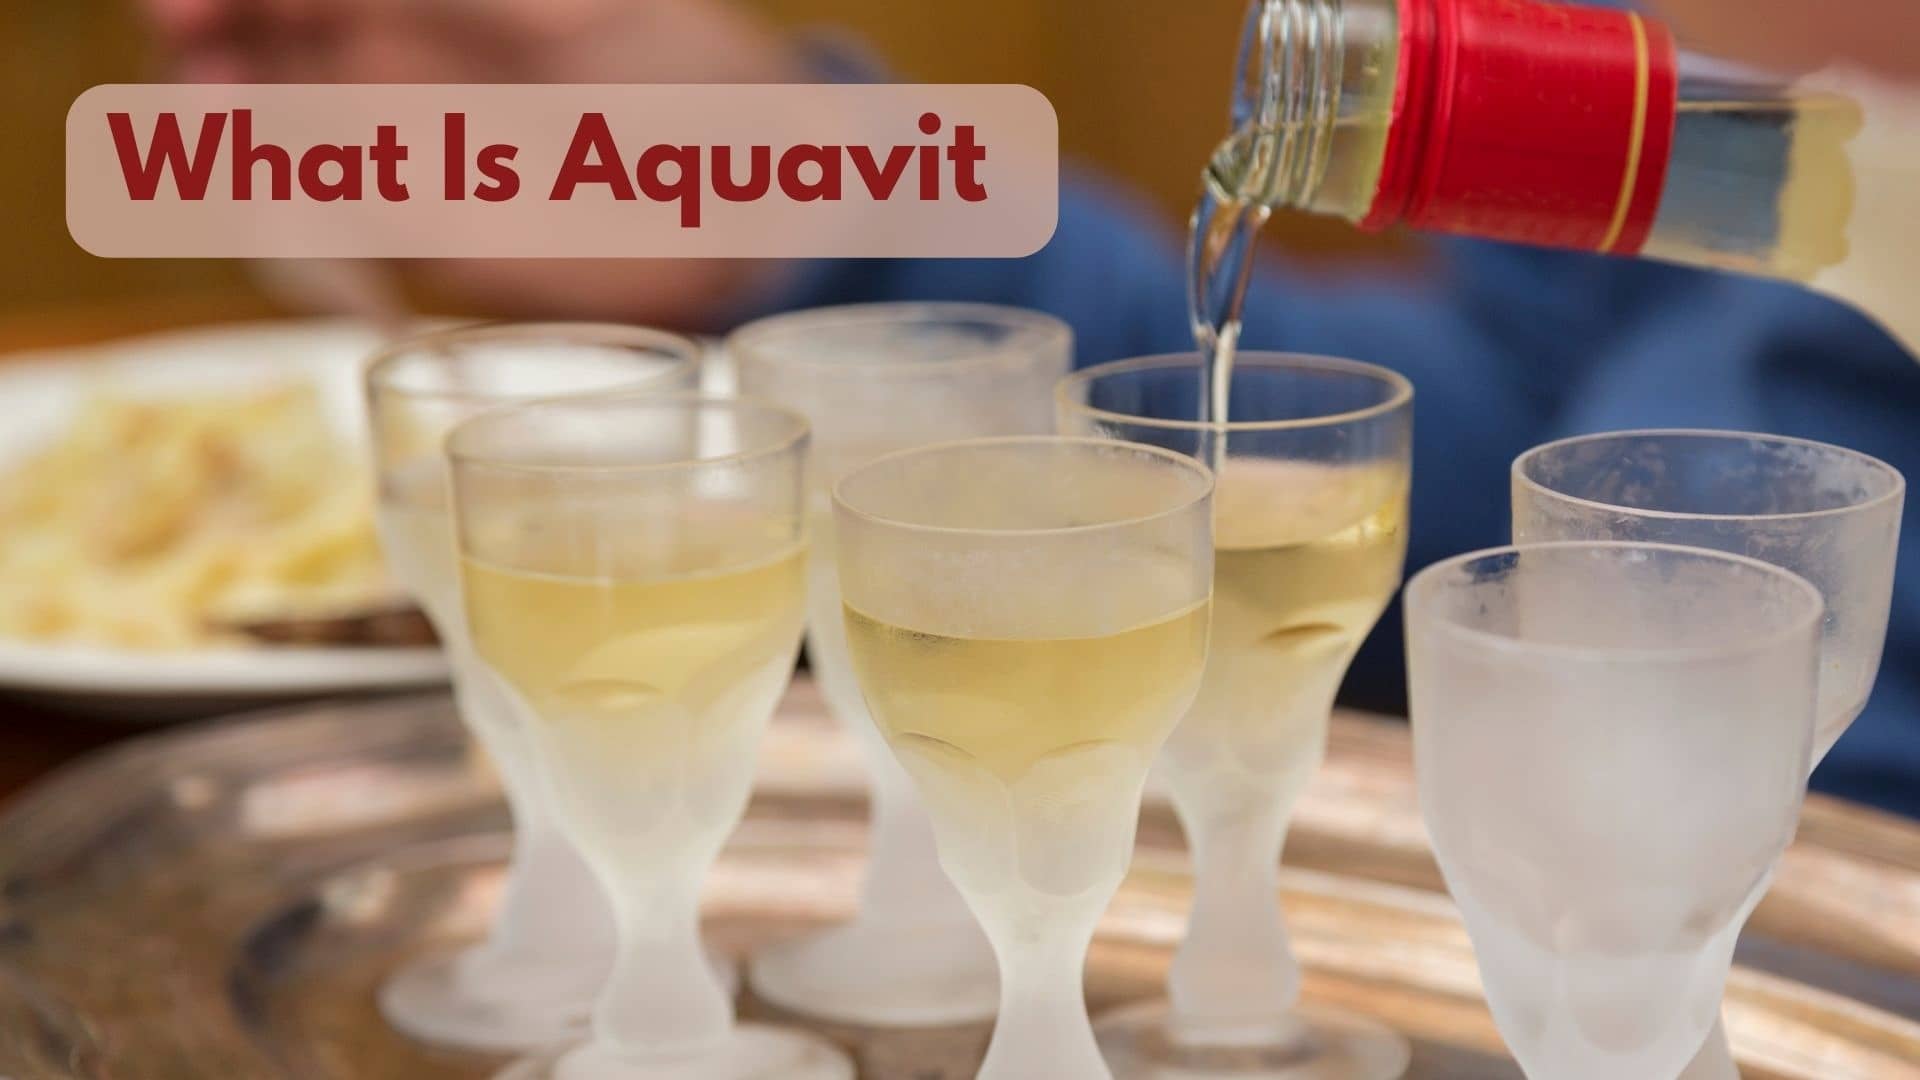 Could You Please Explain What Is Aquavit?